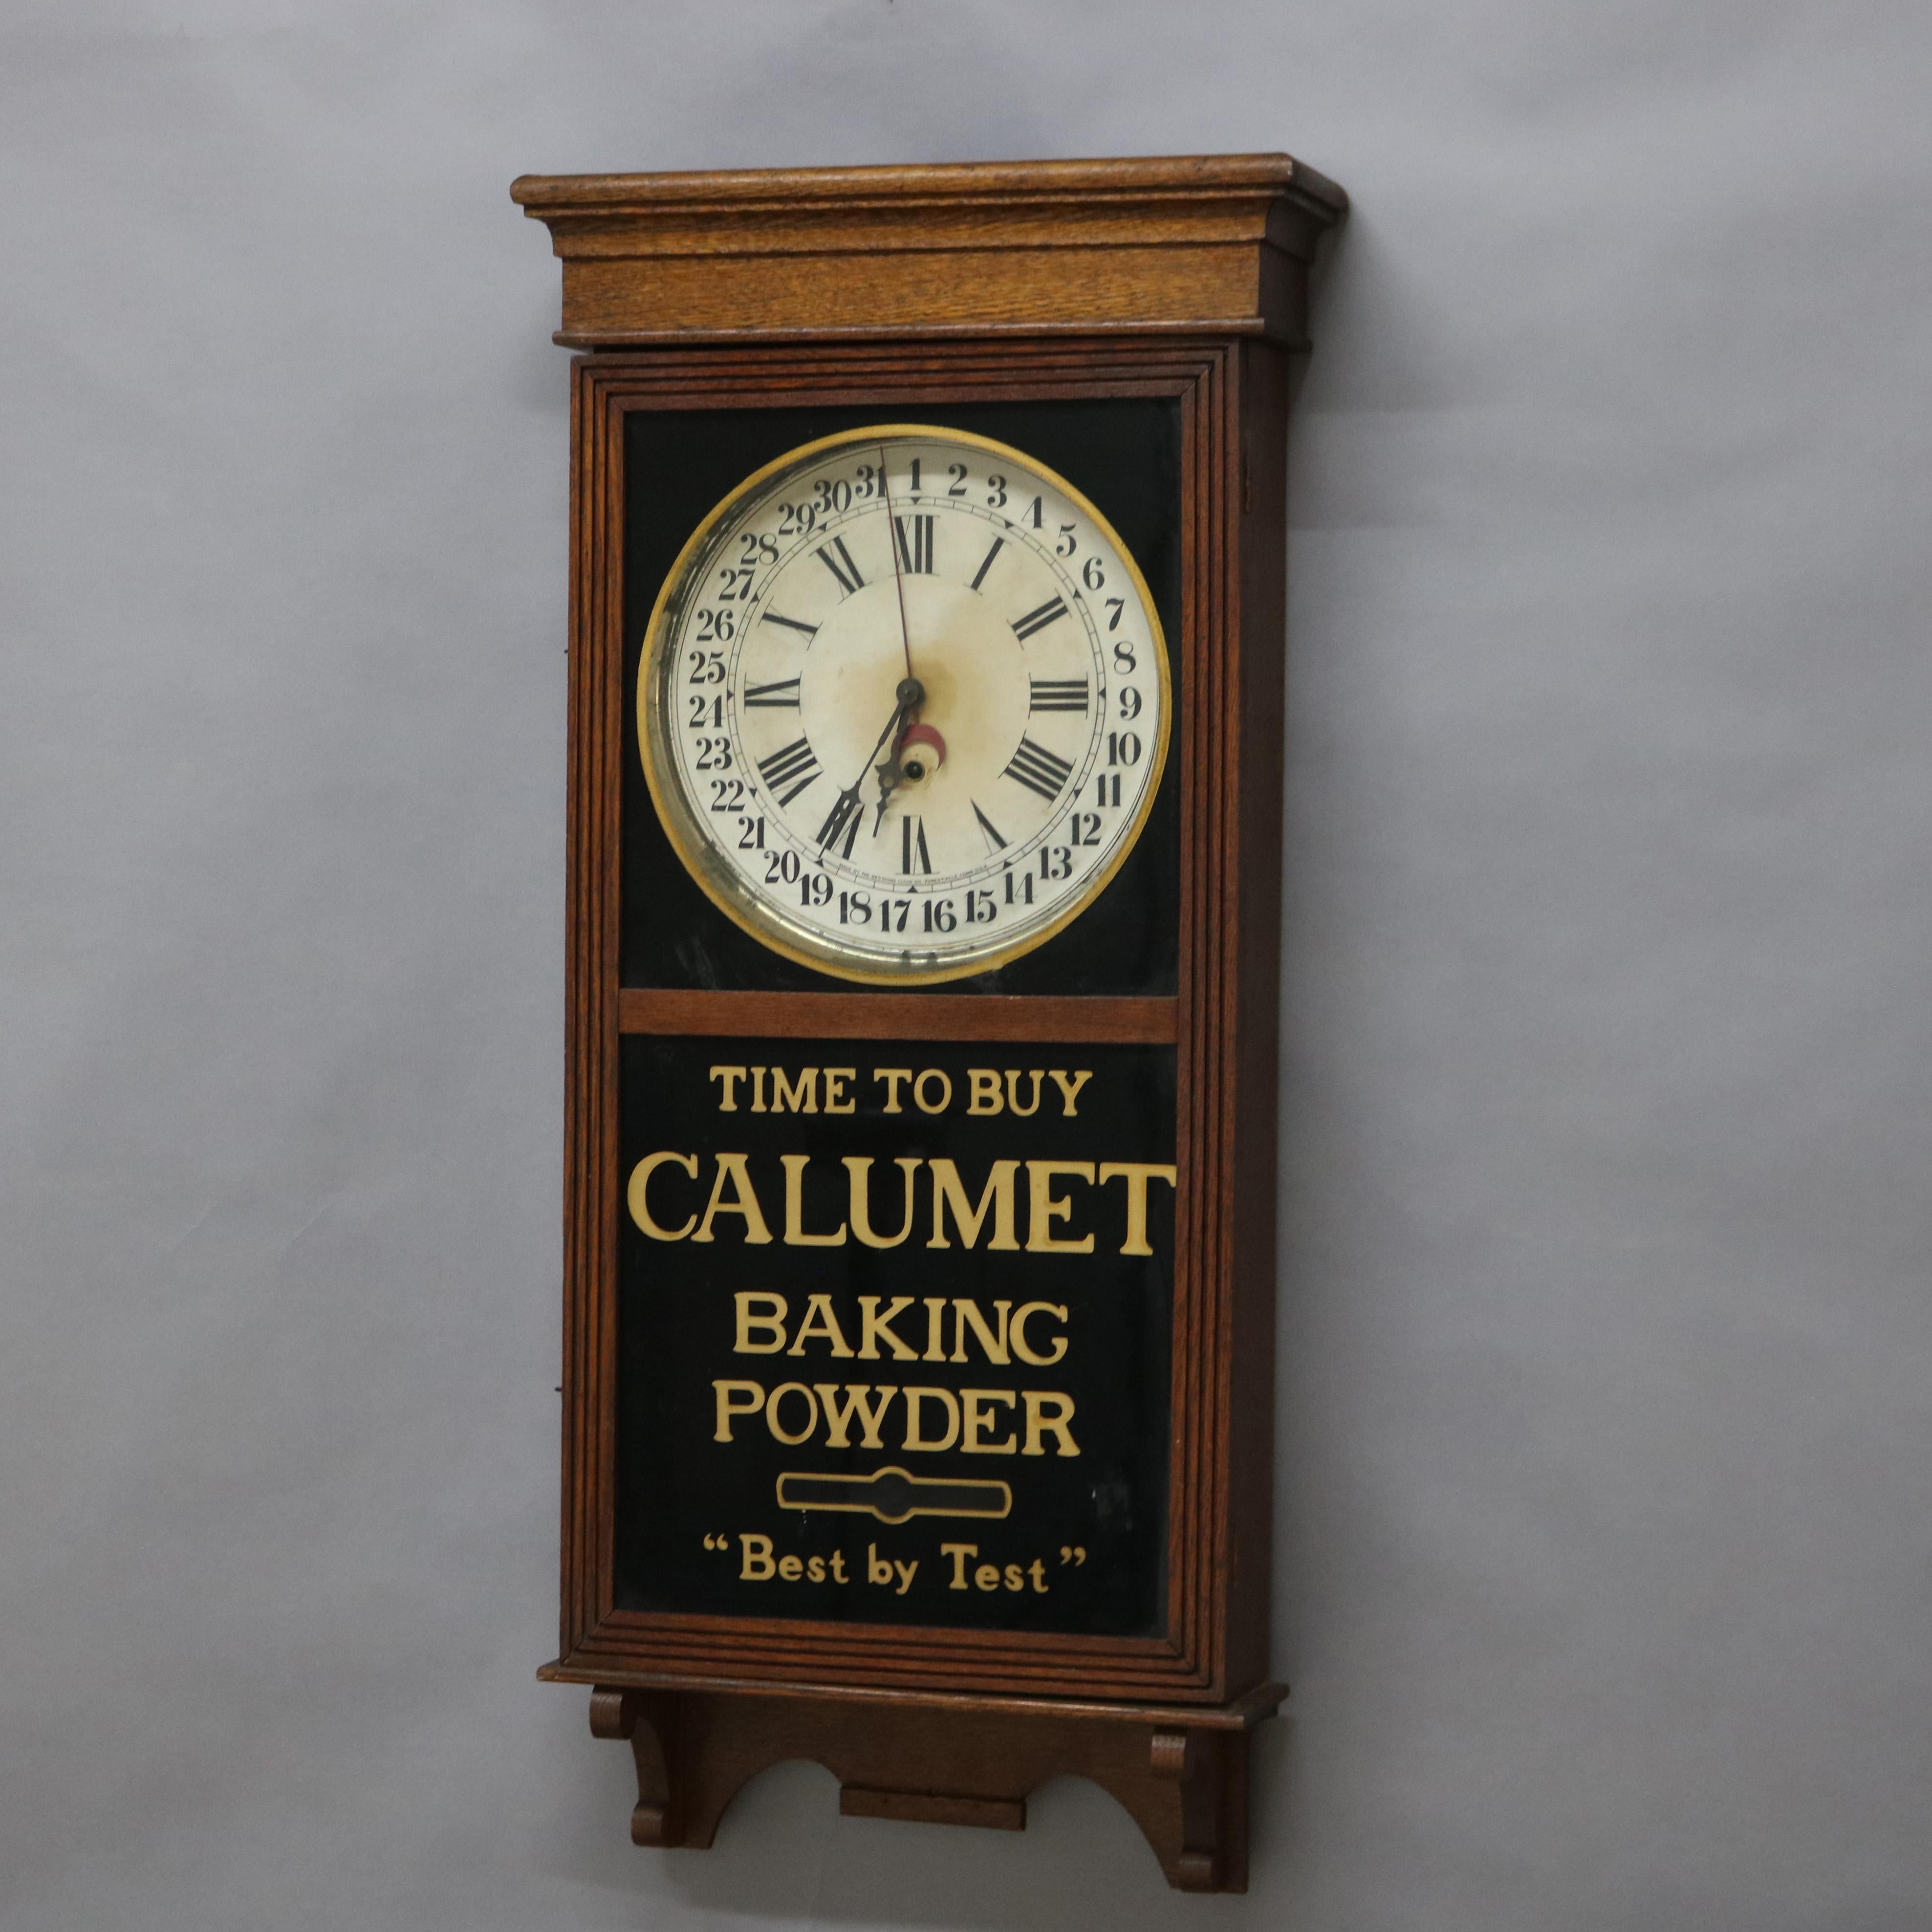 calumet baking powder clock